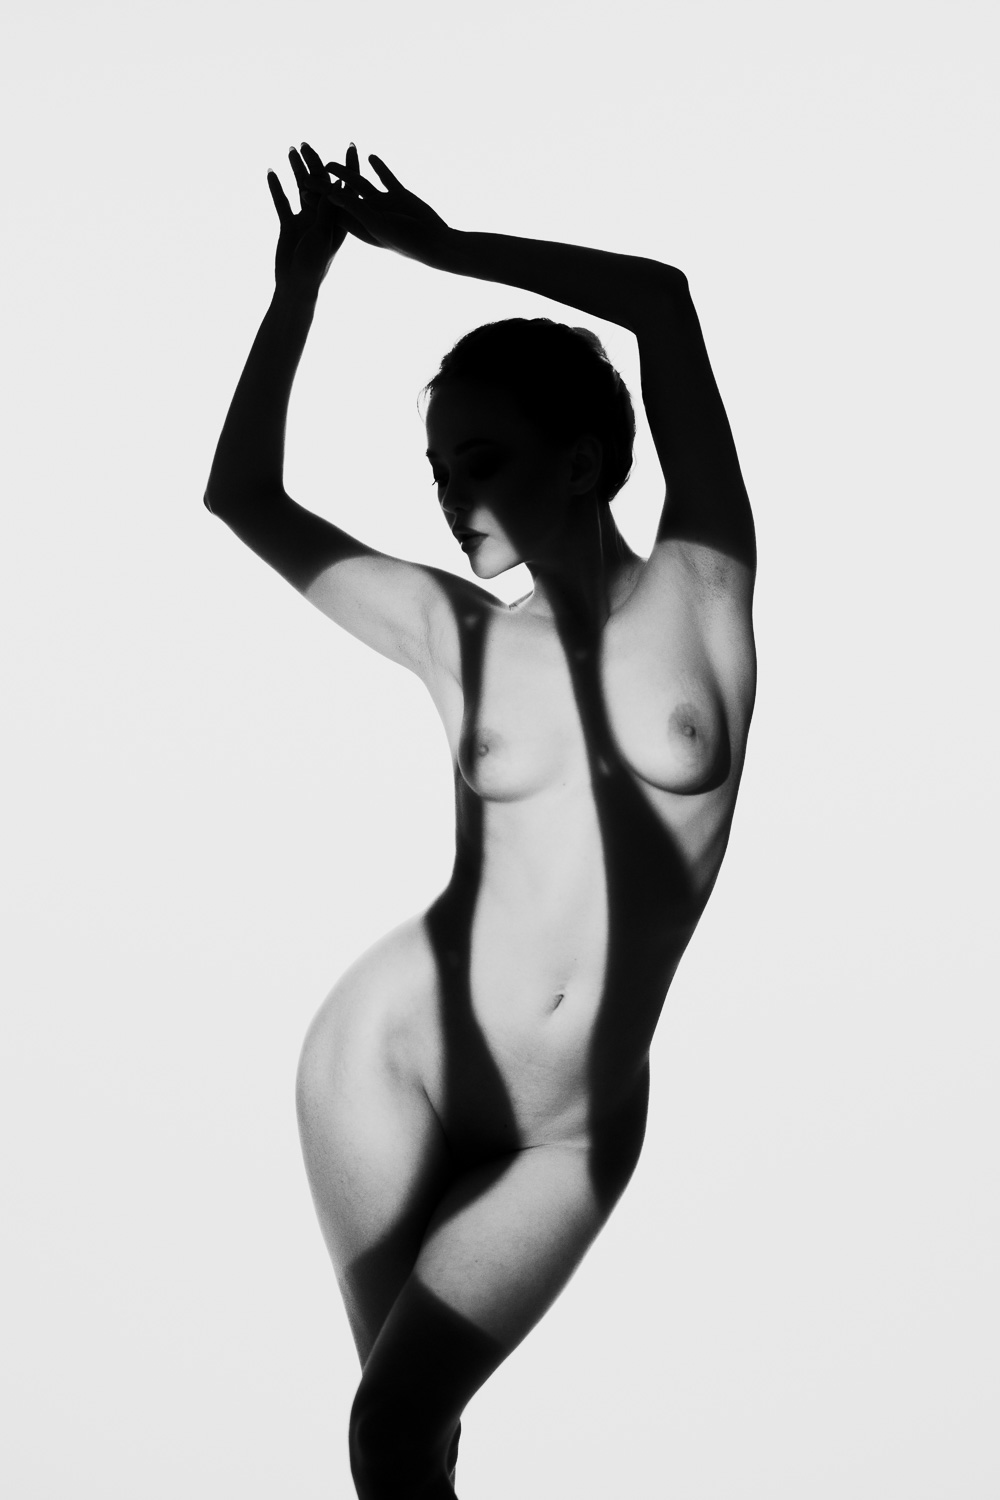 Eine kunstvolle Schwarz-Weiß-Fotografie einer Frau im Schatten und Licht. Die kunstvolle Beleuchtung und scharfe Schatten erzeugen eine faszinierende Atmosphäre.